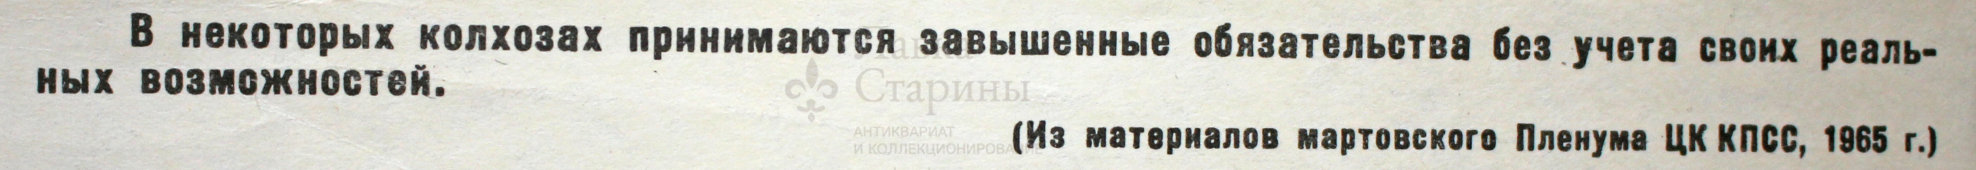 Советский агитационный плакат «Не согласовал», Боевой Карандаш, художник Л. Худяков, 1965 г.